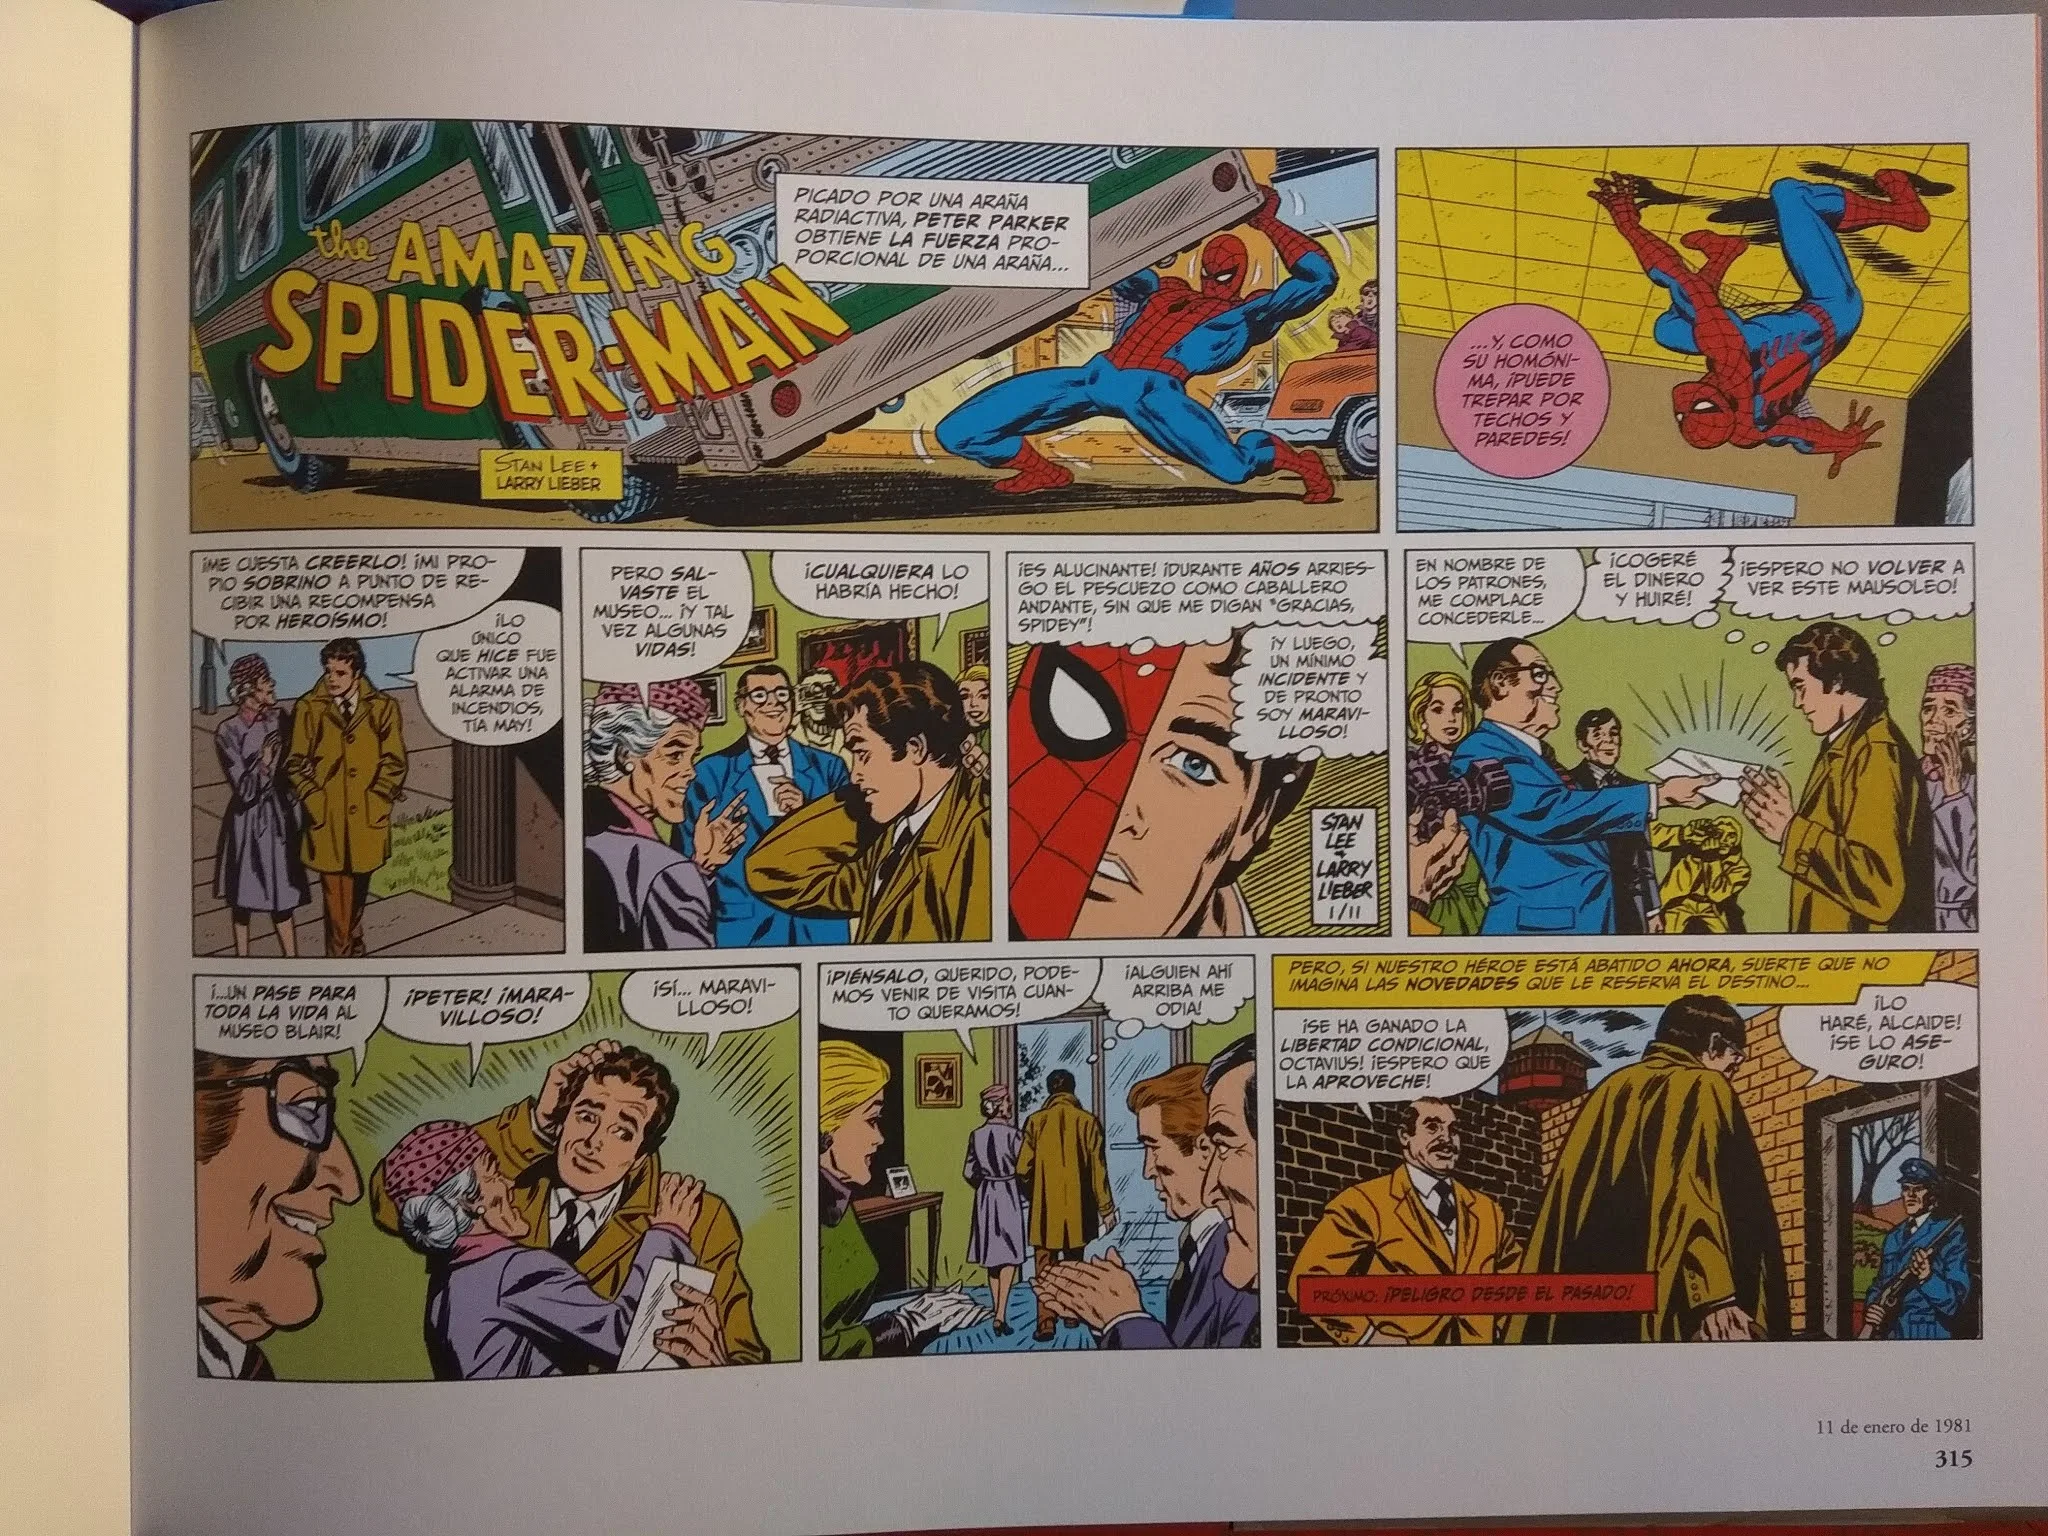 El Asombroso Spiderman: Las Tiras de Prensa 1979-1981